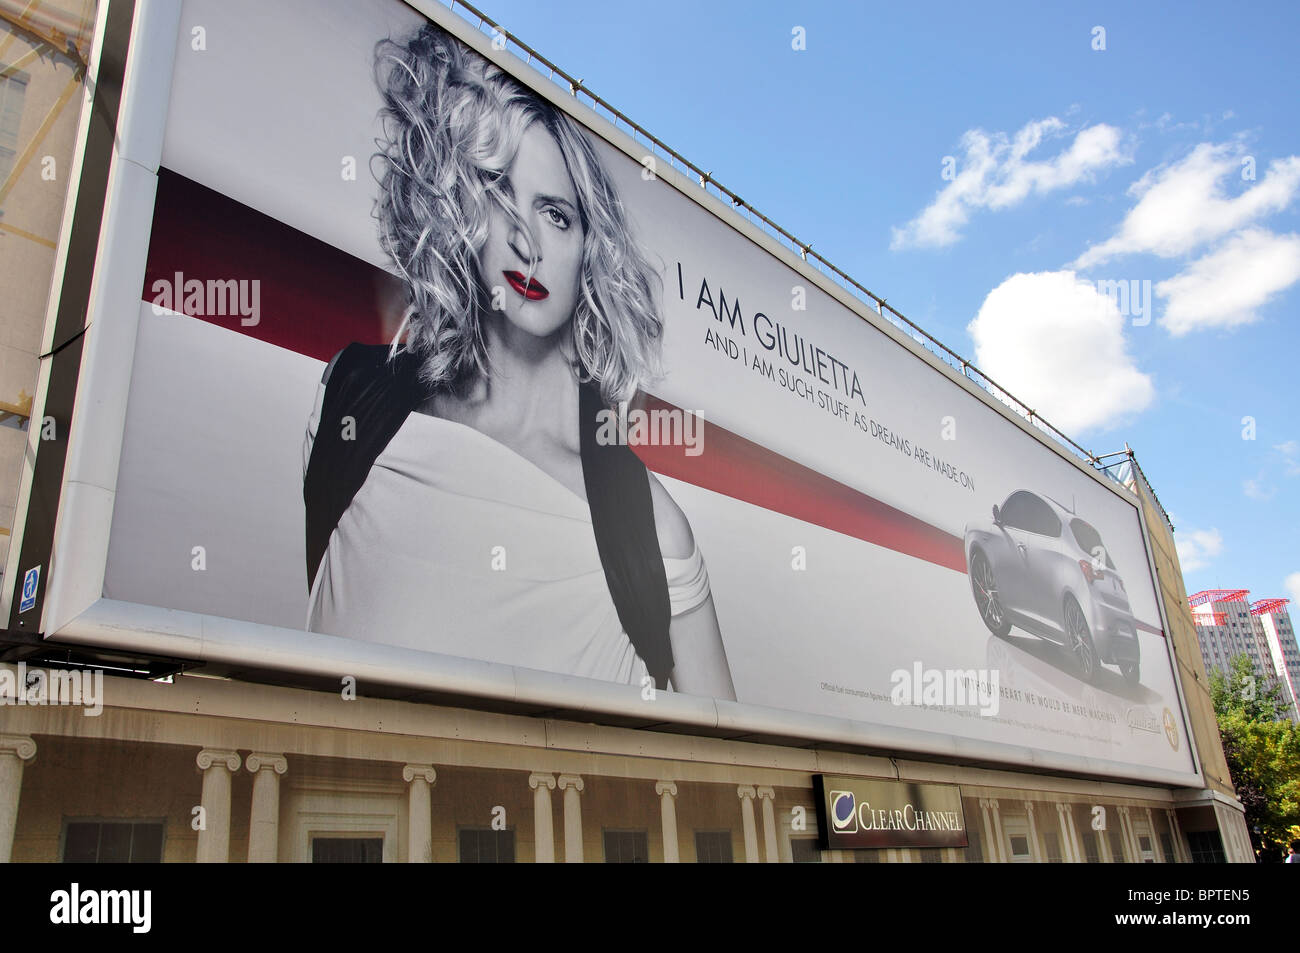 Alfa Giulietta la publicité automobile, la thésaurisation Edgeware Road, Paddington, Westminster, Londres, Angleterre, Royaume-Uni Banque D'Images